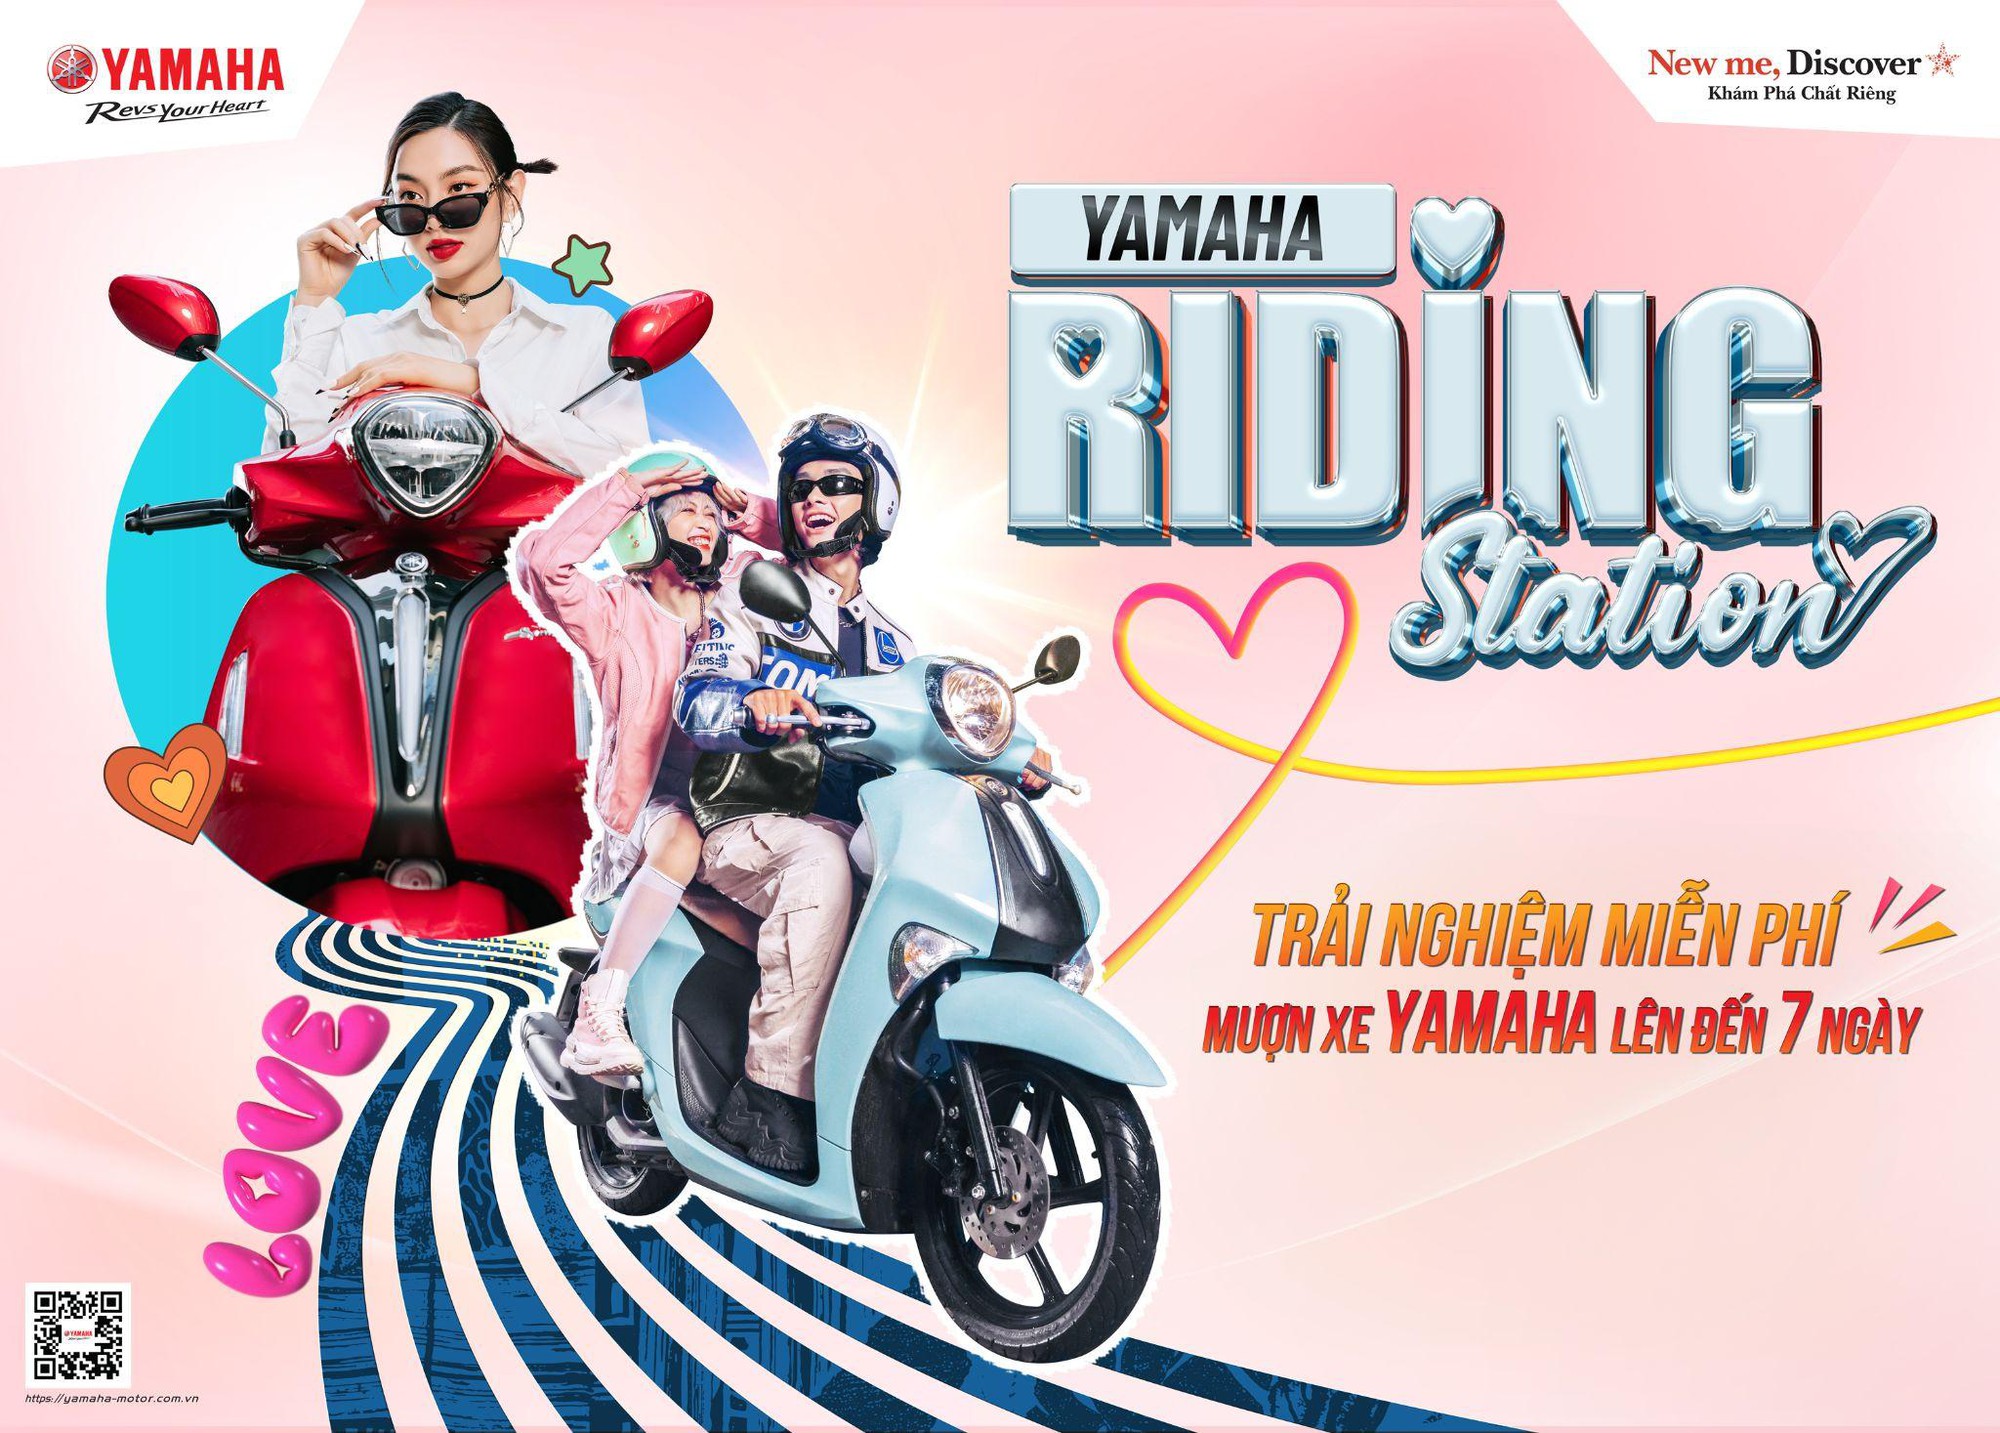 Yamaha Riding Station: Trải nghiệm xe miễn phí trong 7 ngày cùng hoa hậu Thùy Tiên, Ninh-Dương couple và dàn sao đình đám - Ảnh 1.